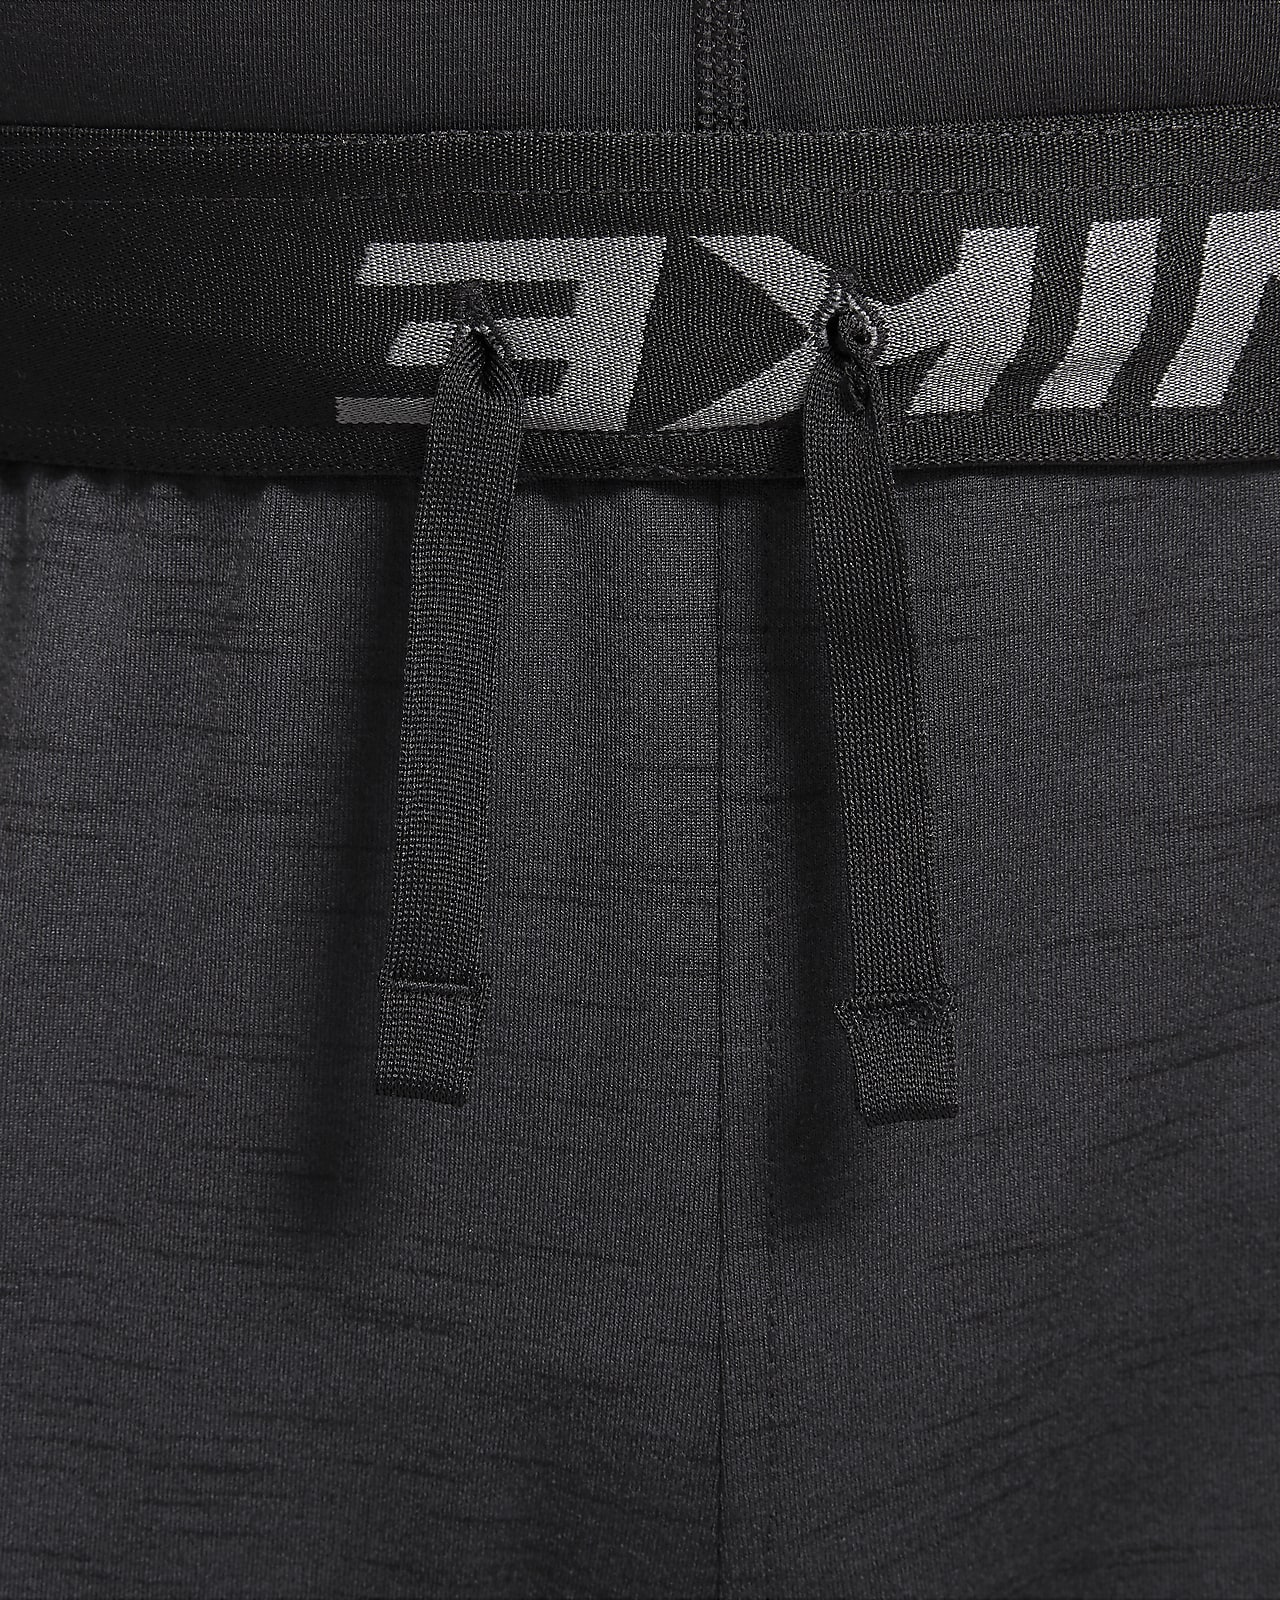 Calças Nike Dri-FIT Yoga para homem - CZ2208-010 - Preto